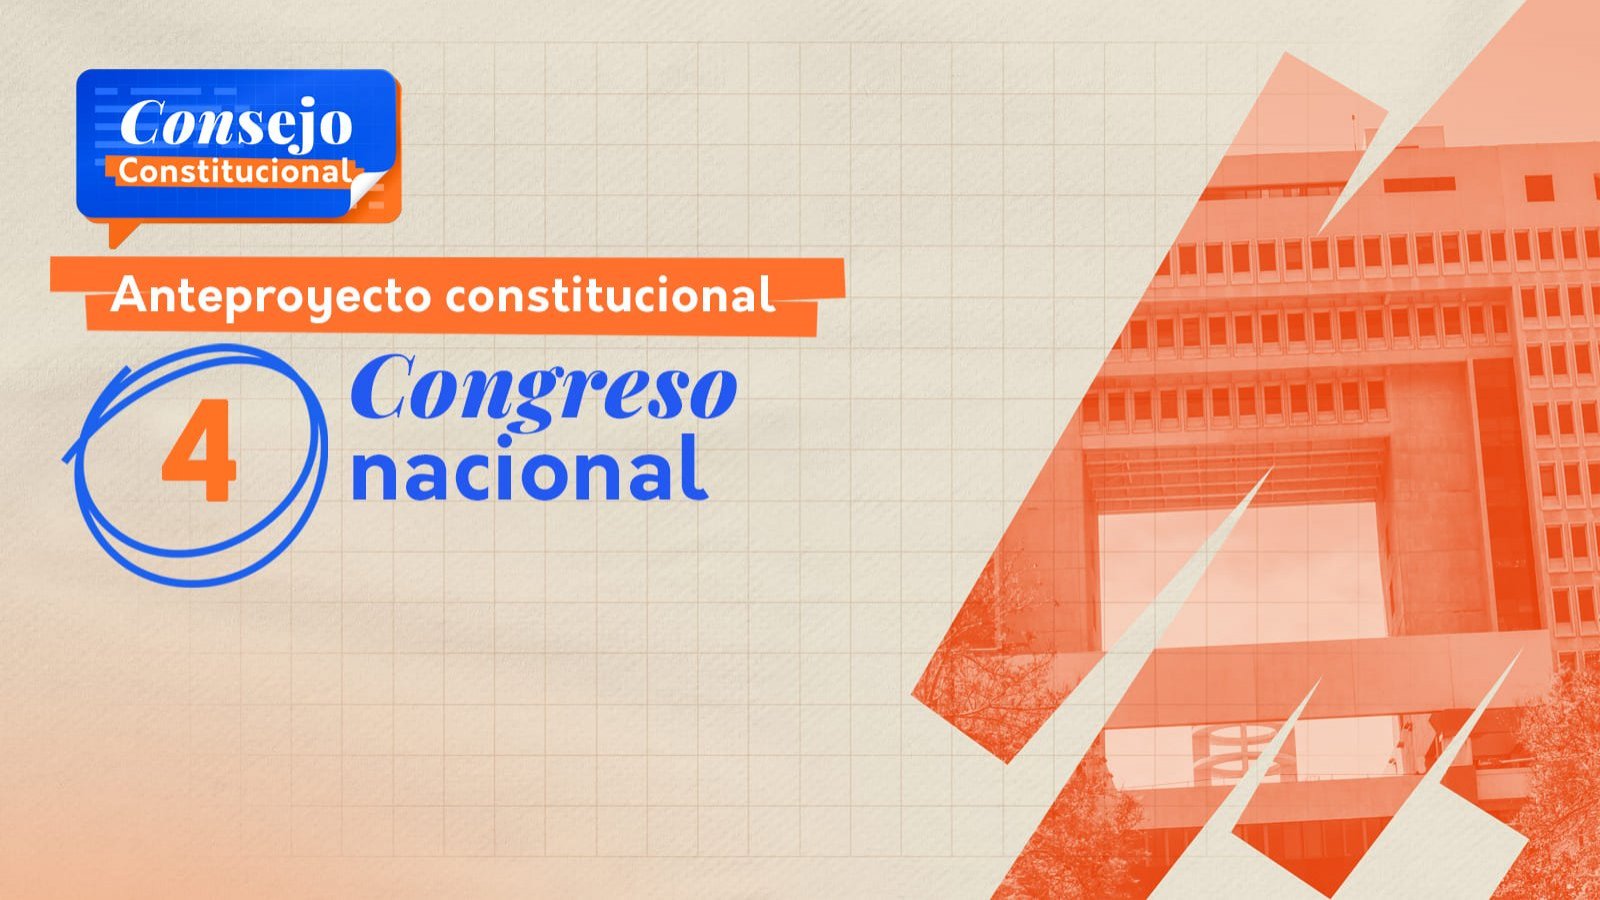 Capítulo 4 del anteproyecto constitucional: Congreso Nacional